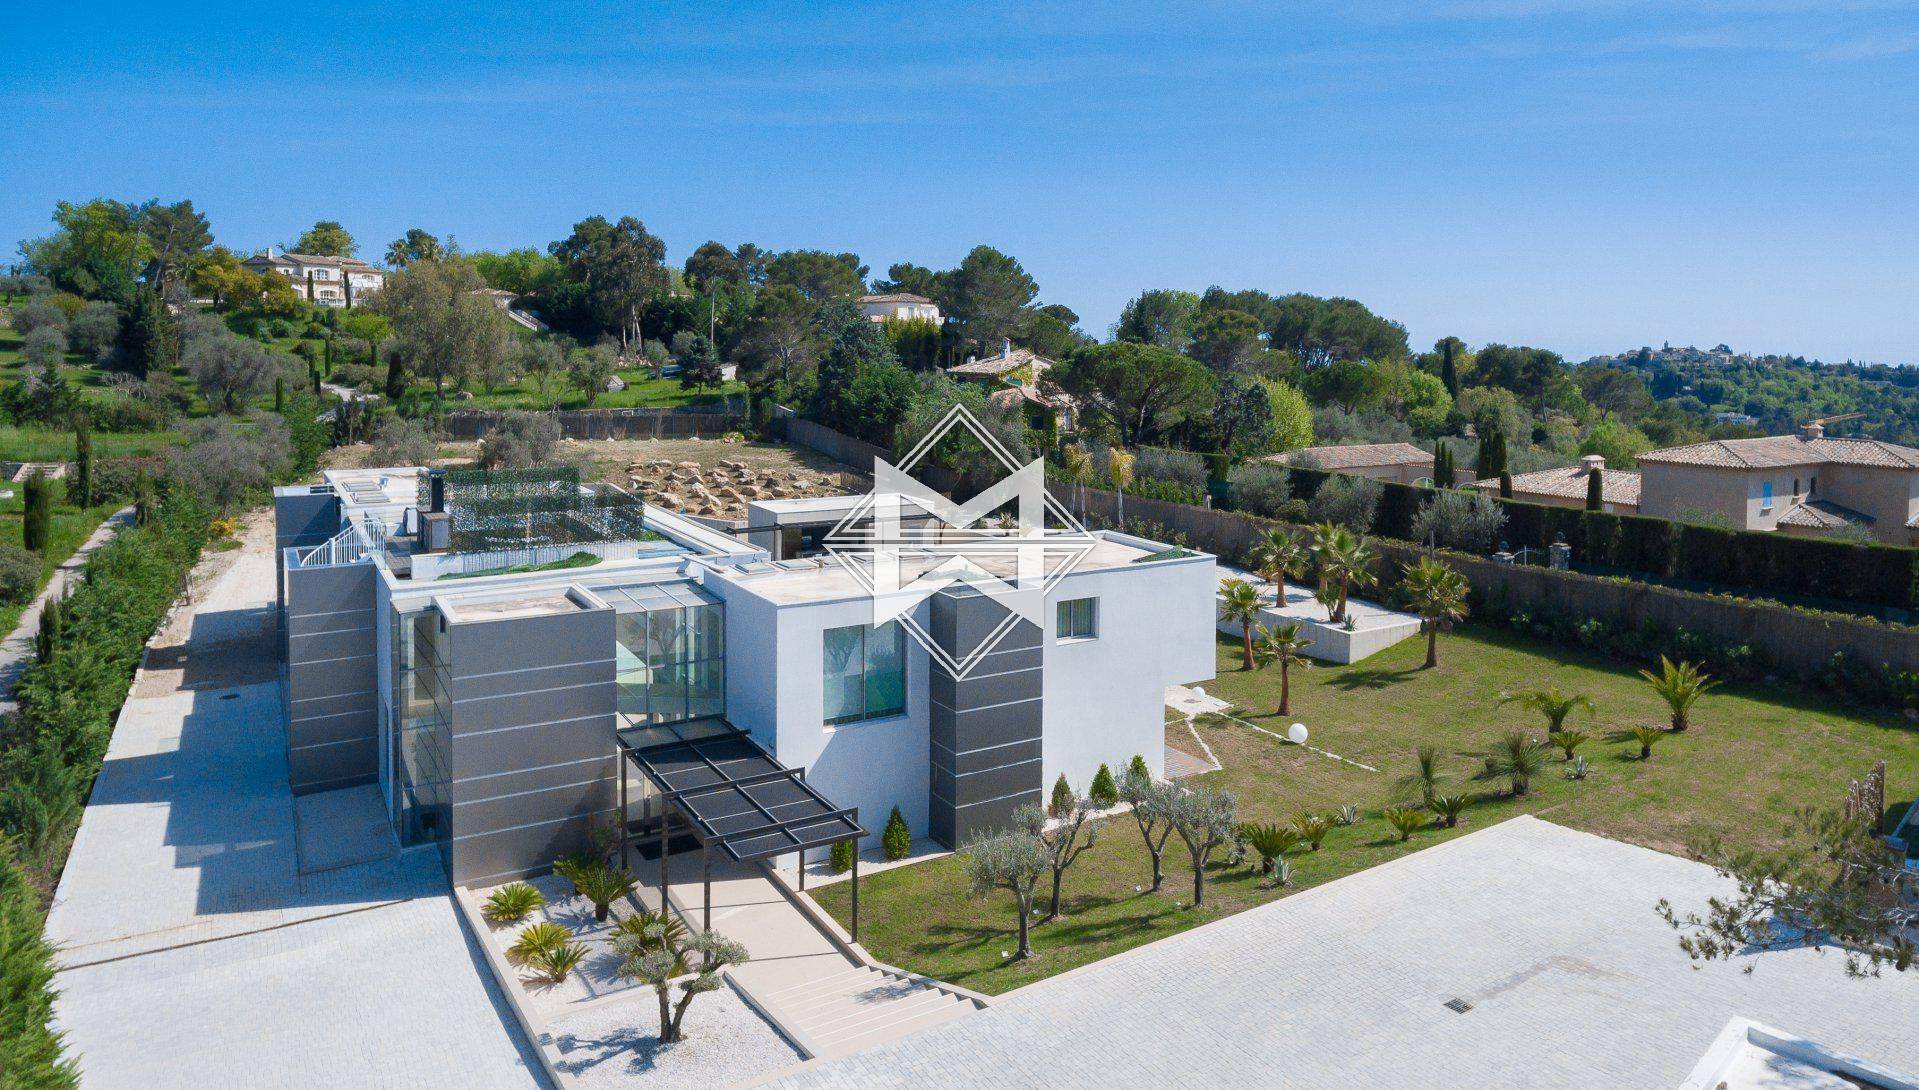 MOUGINS - Spacious contemporary villa